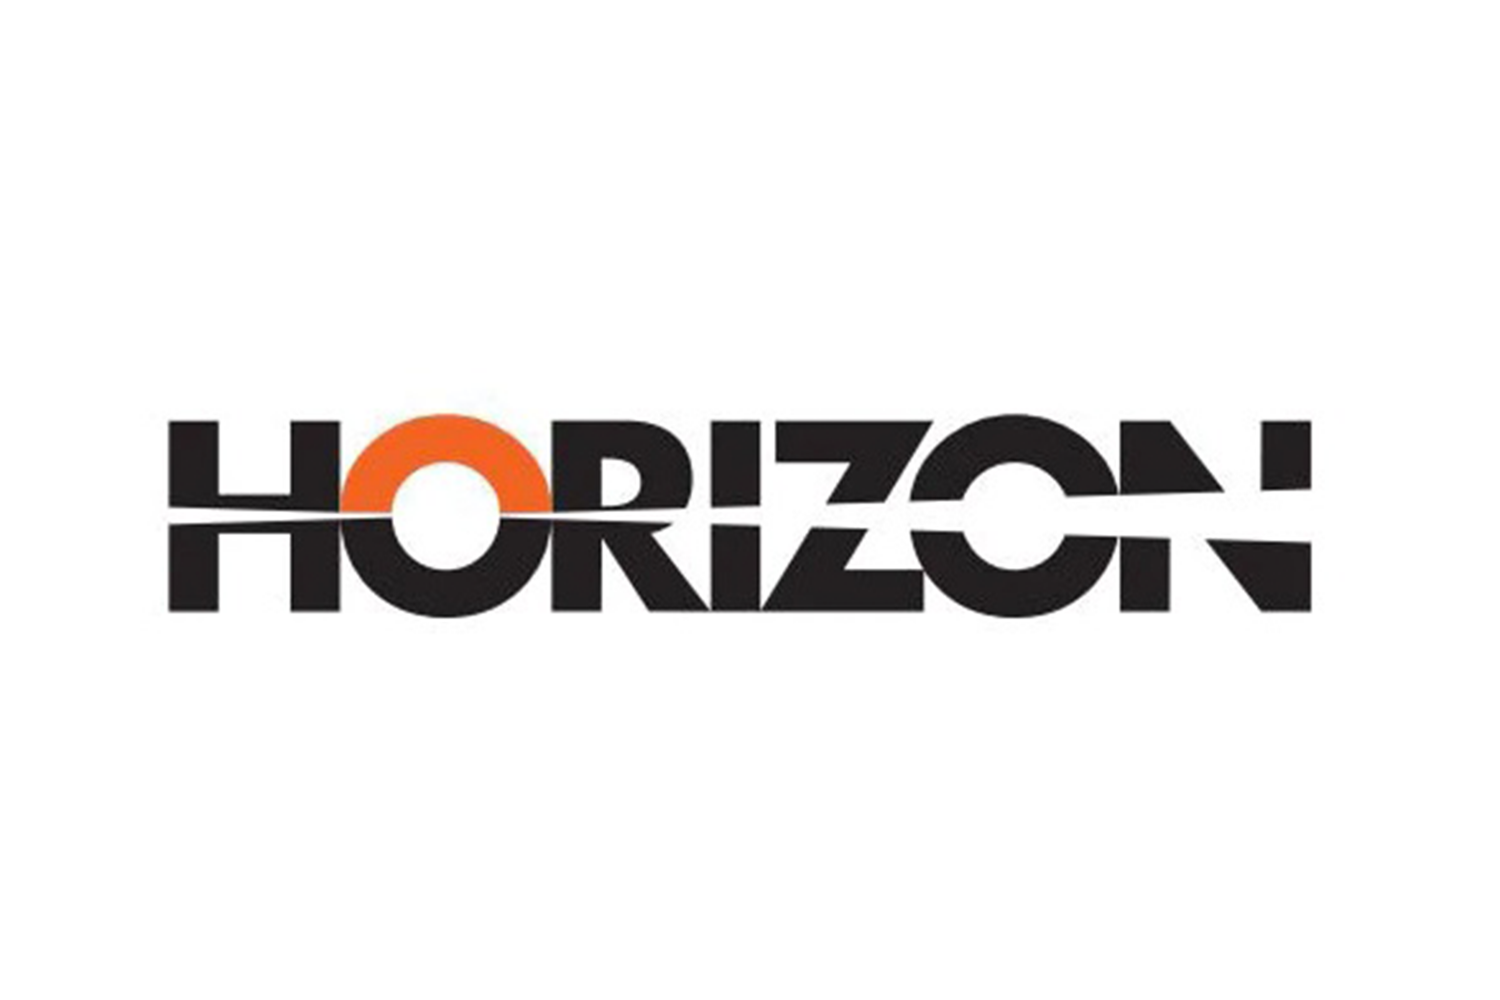 HORIZON HORIZON_logo.png